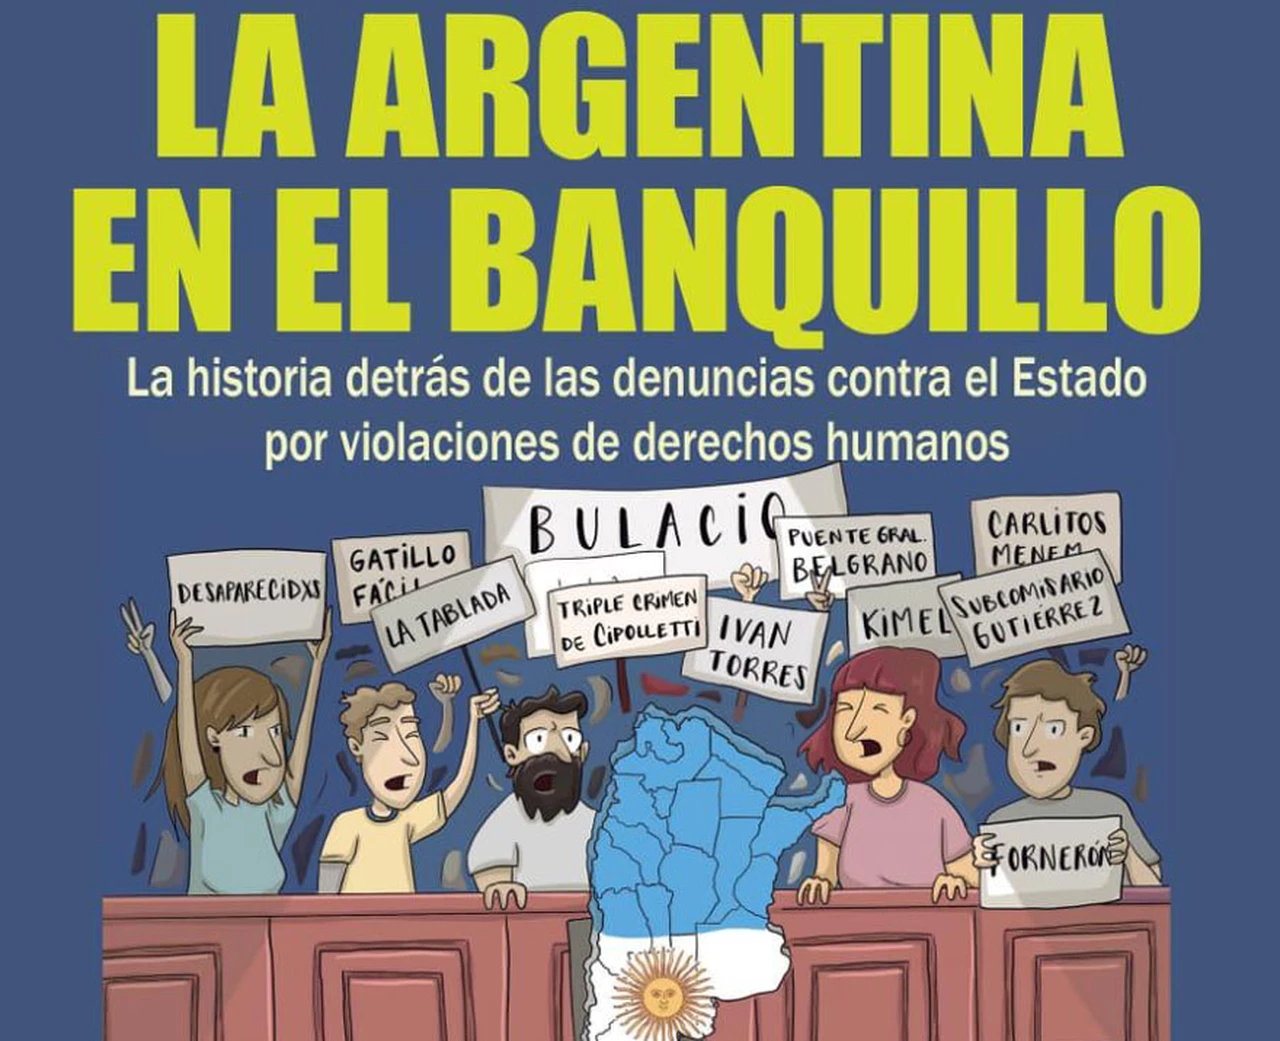 "La Argentina en el banquillo": nuevo libro analiza las denuncias contra el Estado por violaciones de derechos humanos